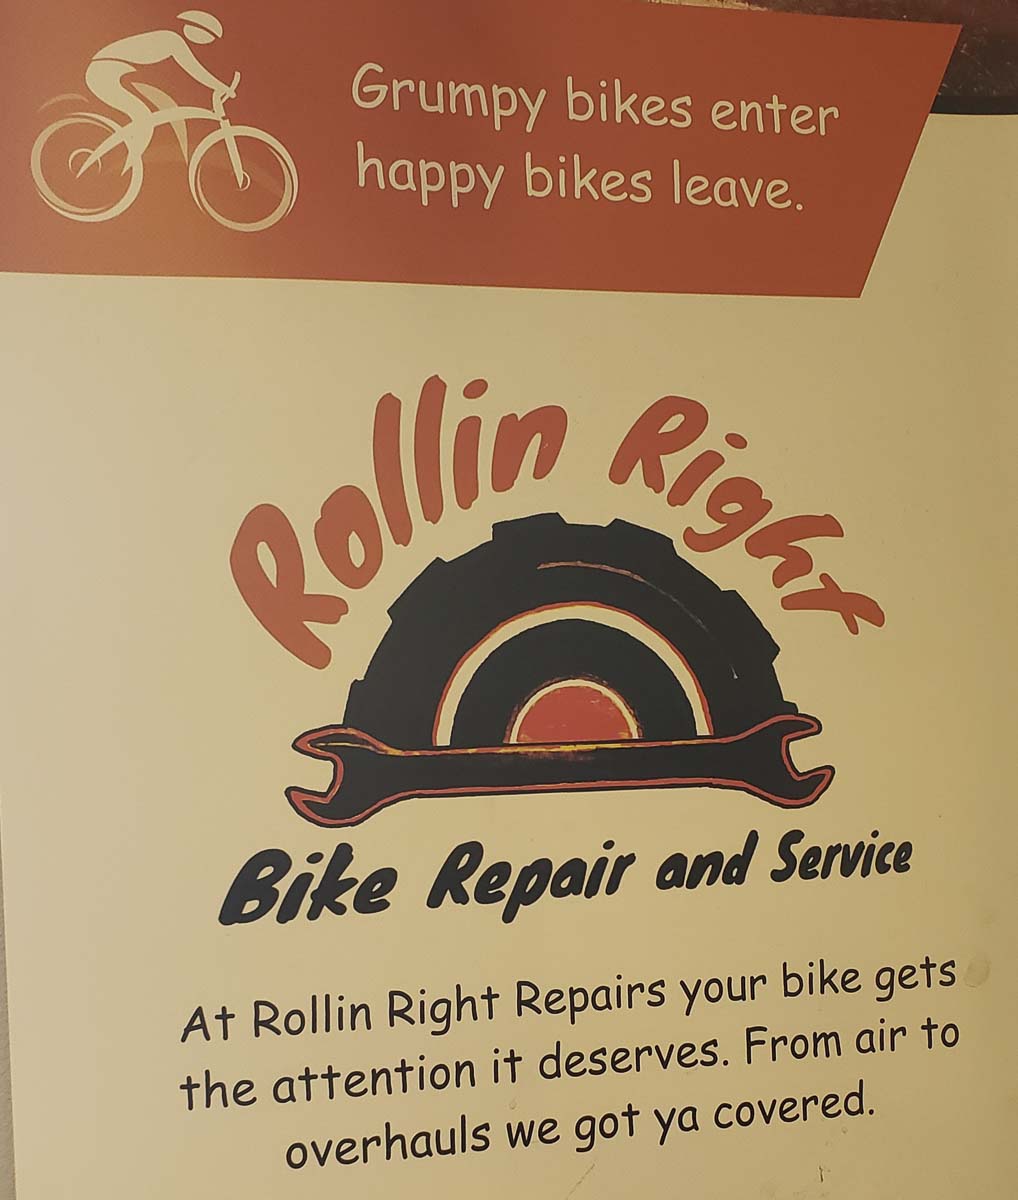 paul's bike repair